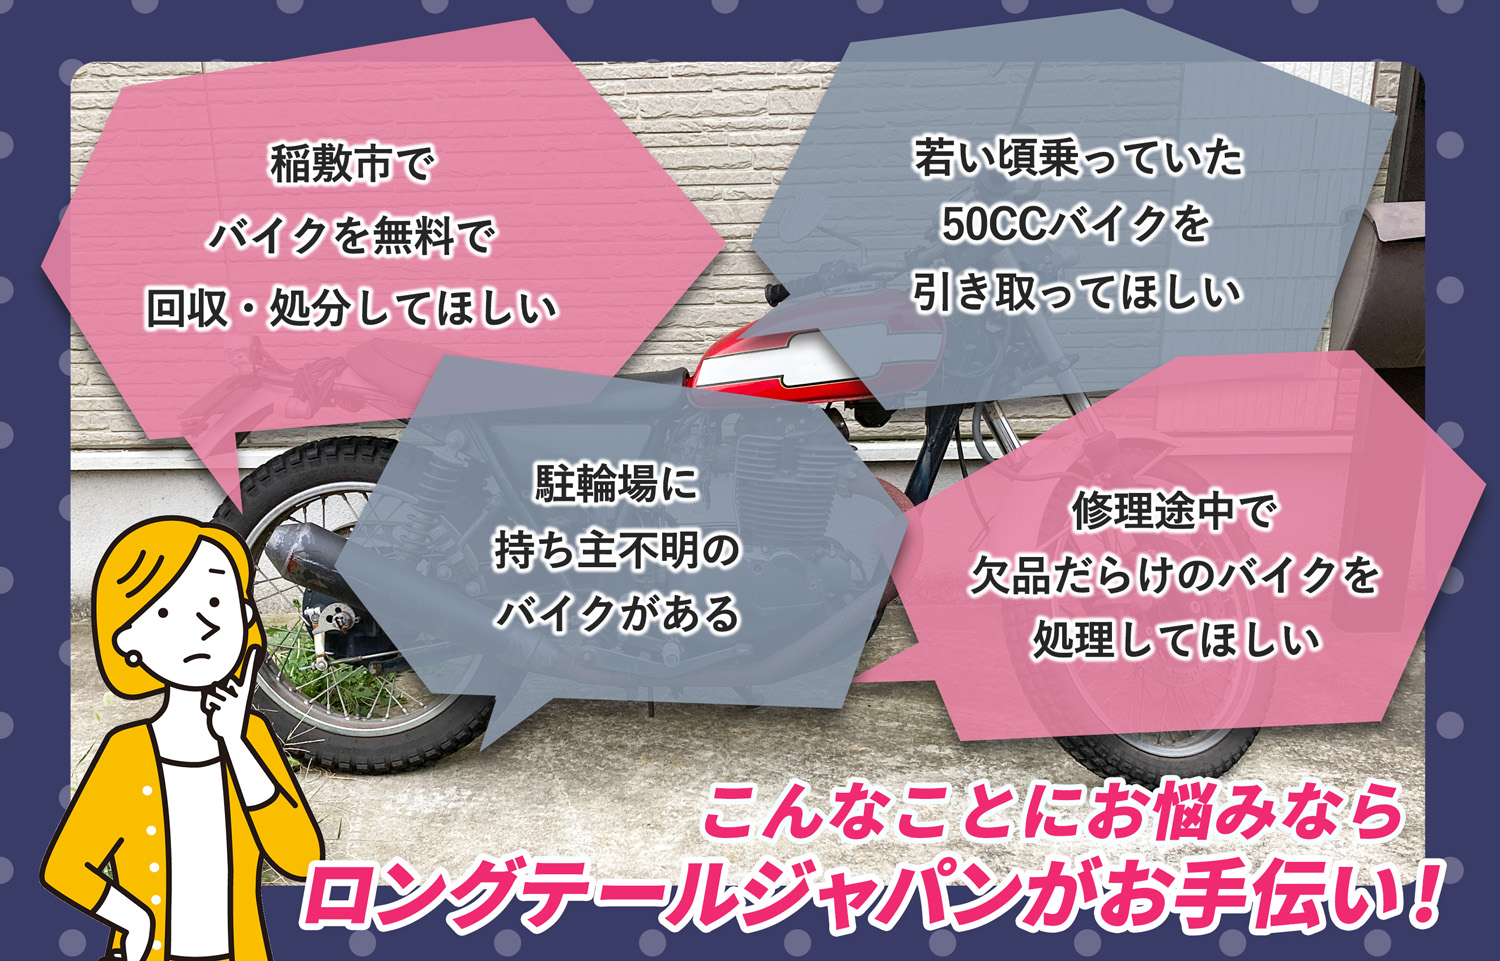 稲敷市でこんなバイクの処分にお困りでしたらバイク無料回収処分隊がお手伝いいたします。